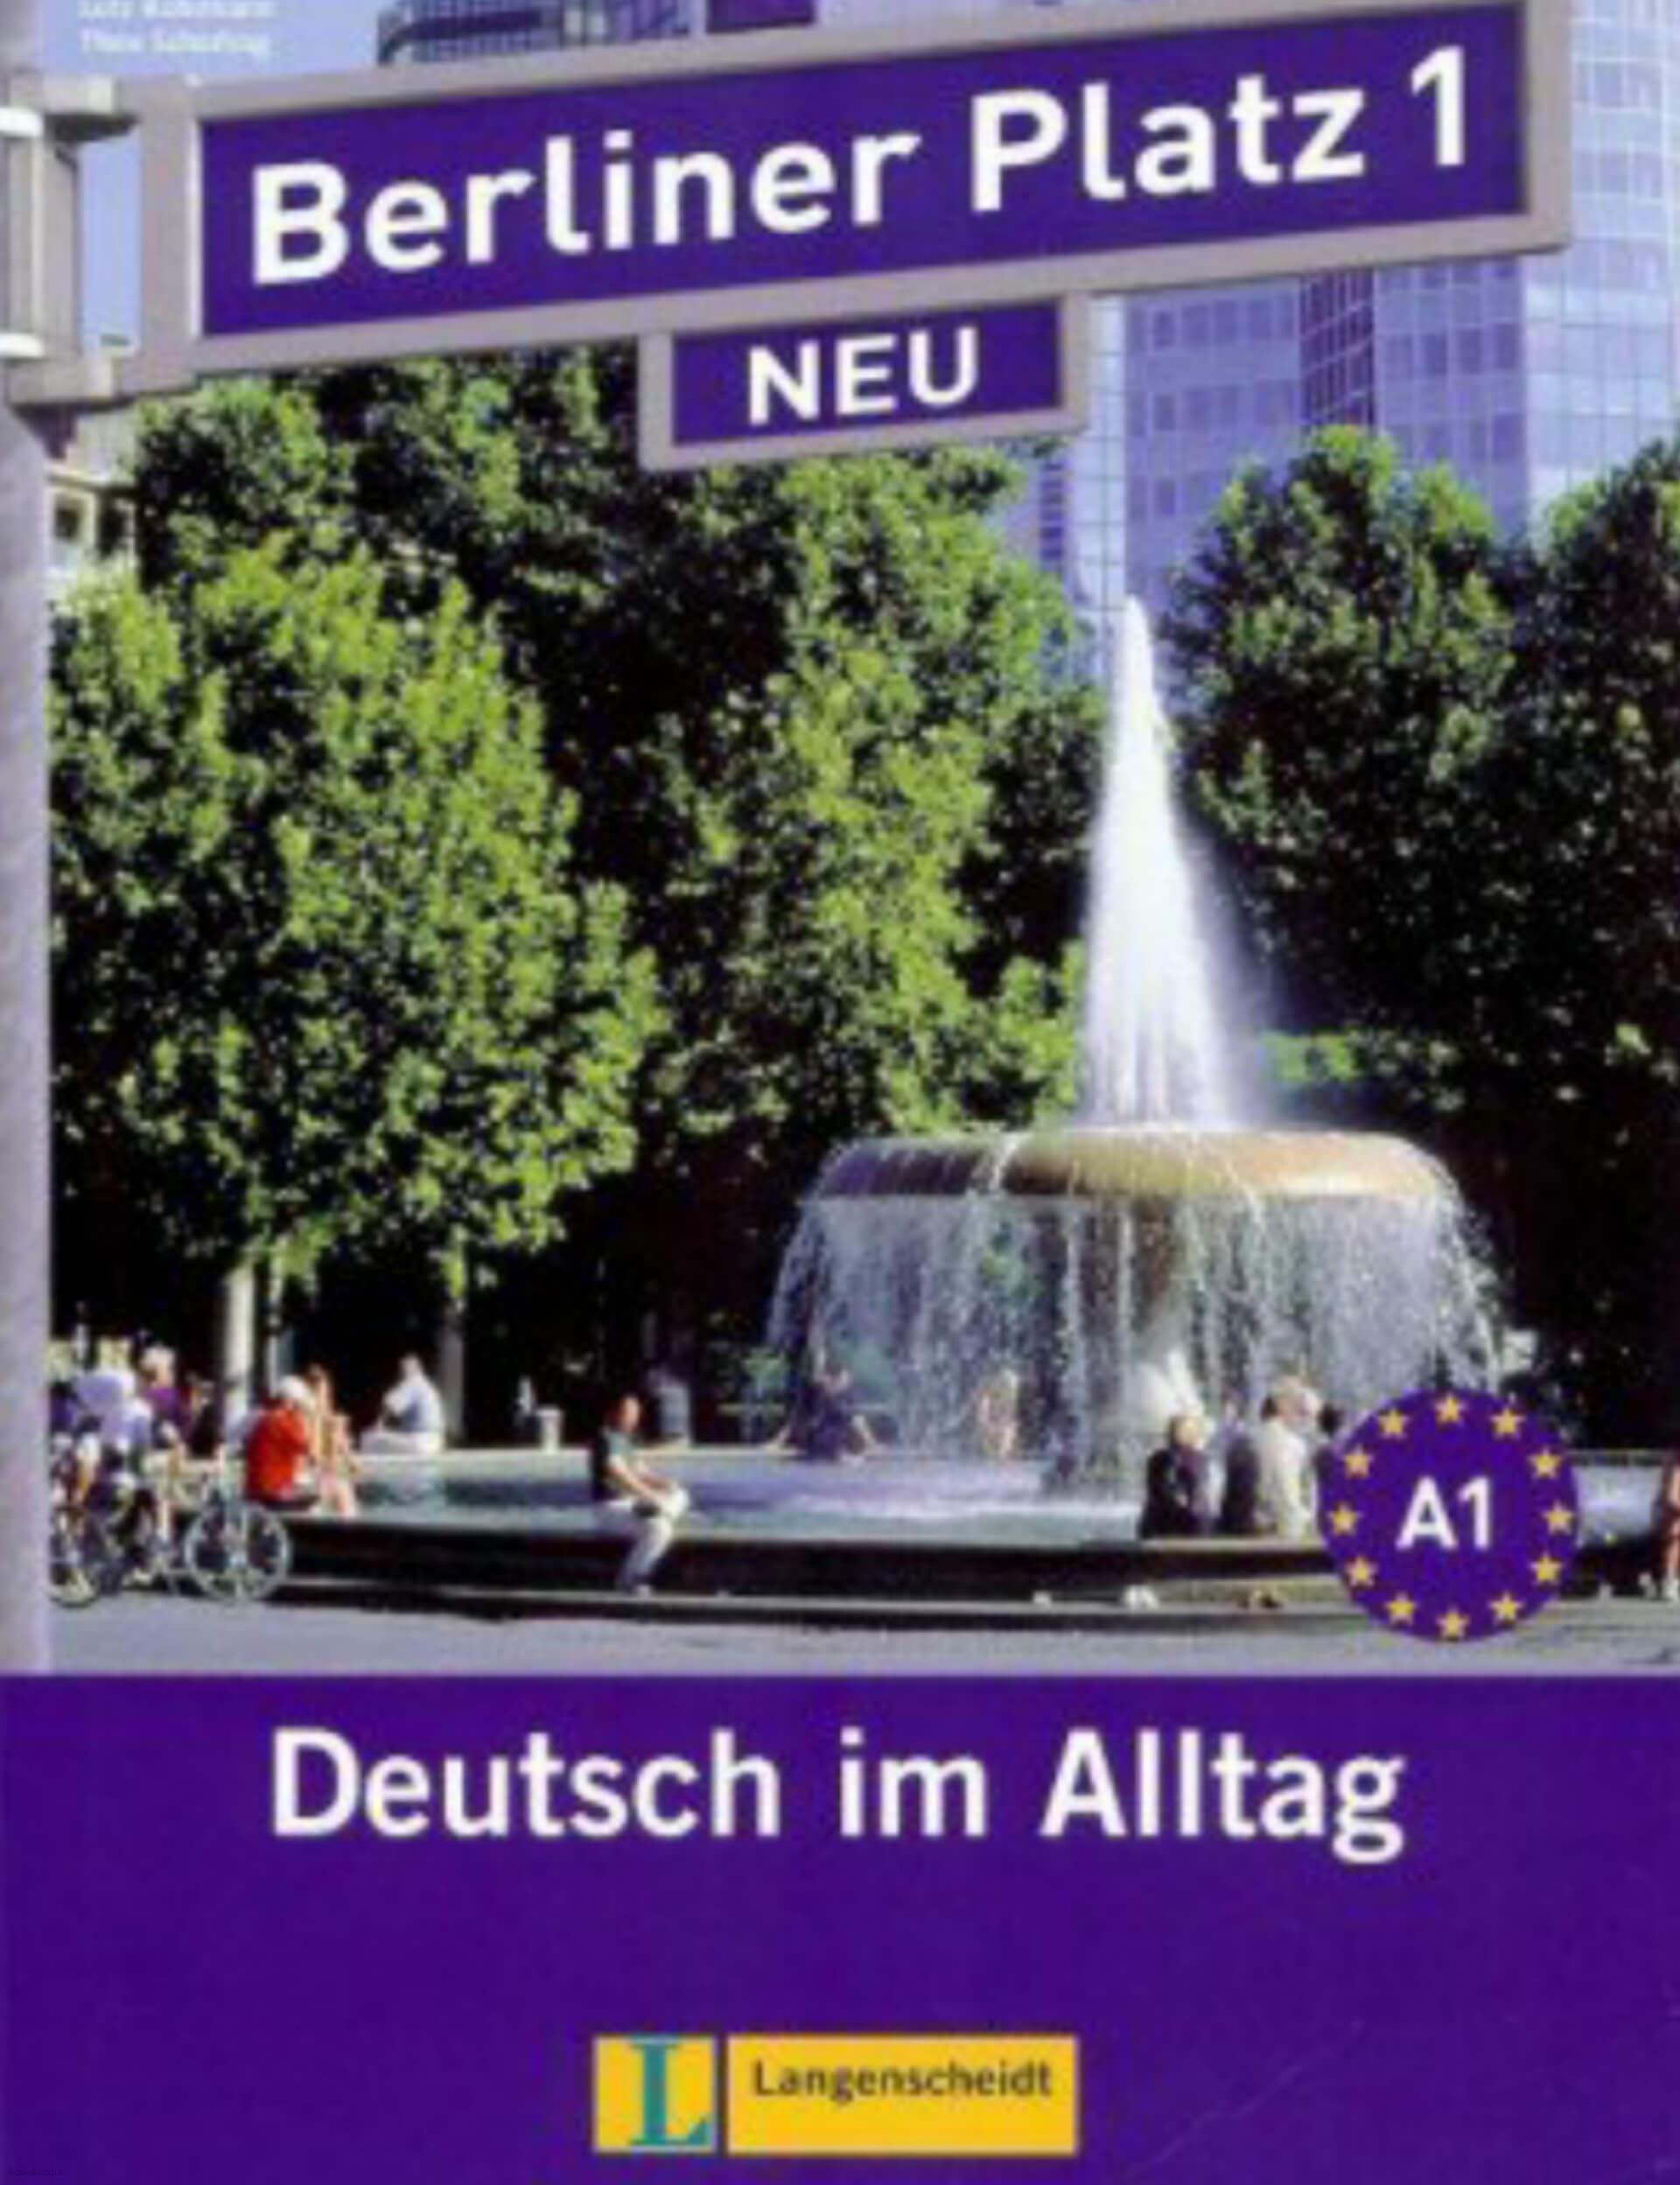 دانلود کتاب آلمانیBerliner Platz 1 Neu